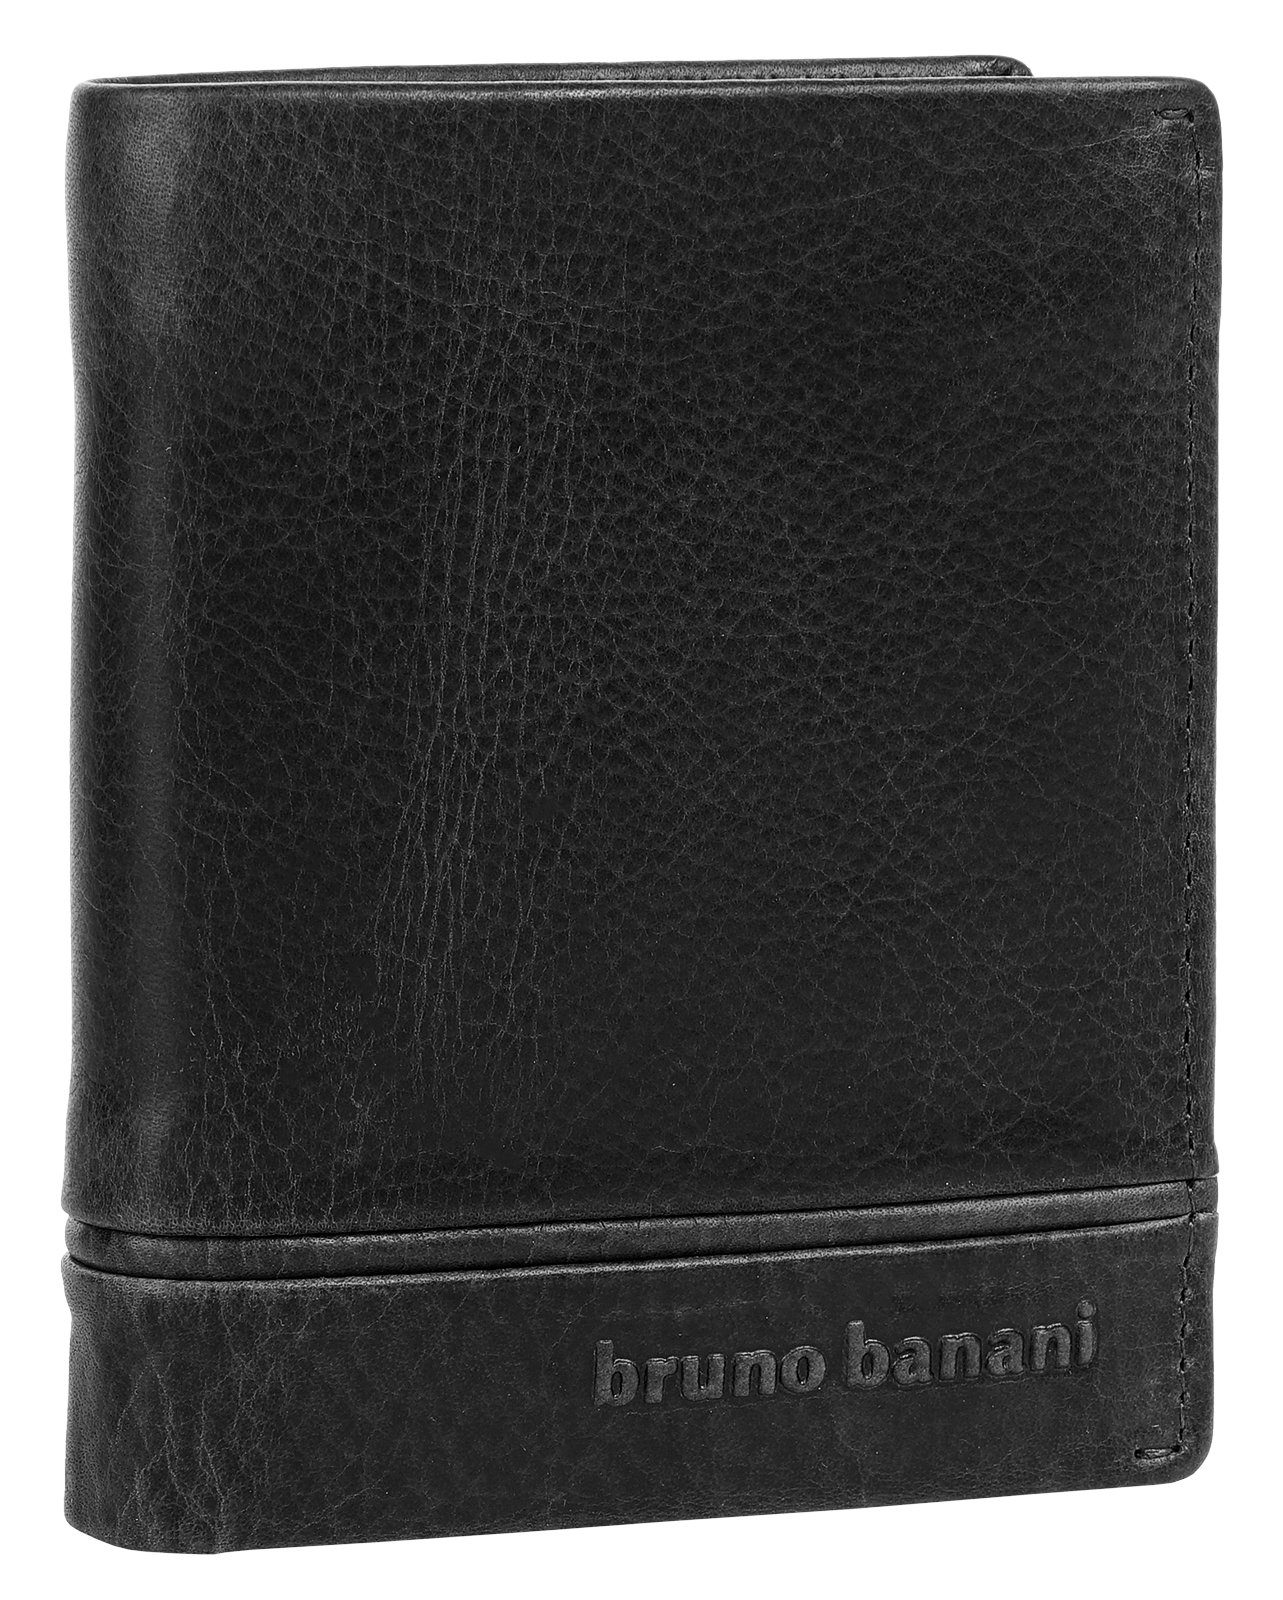 Bruno Banani Geldbörse, echt schwarz Leder